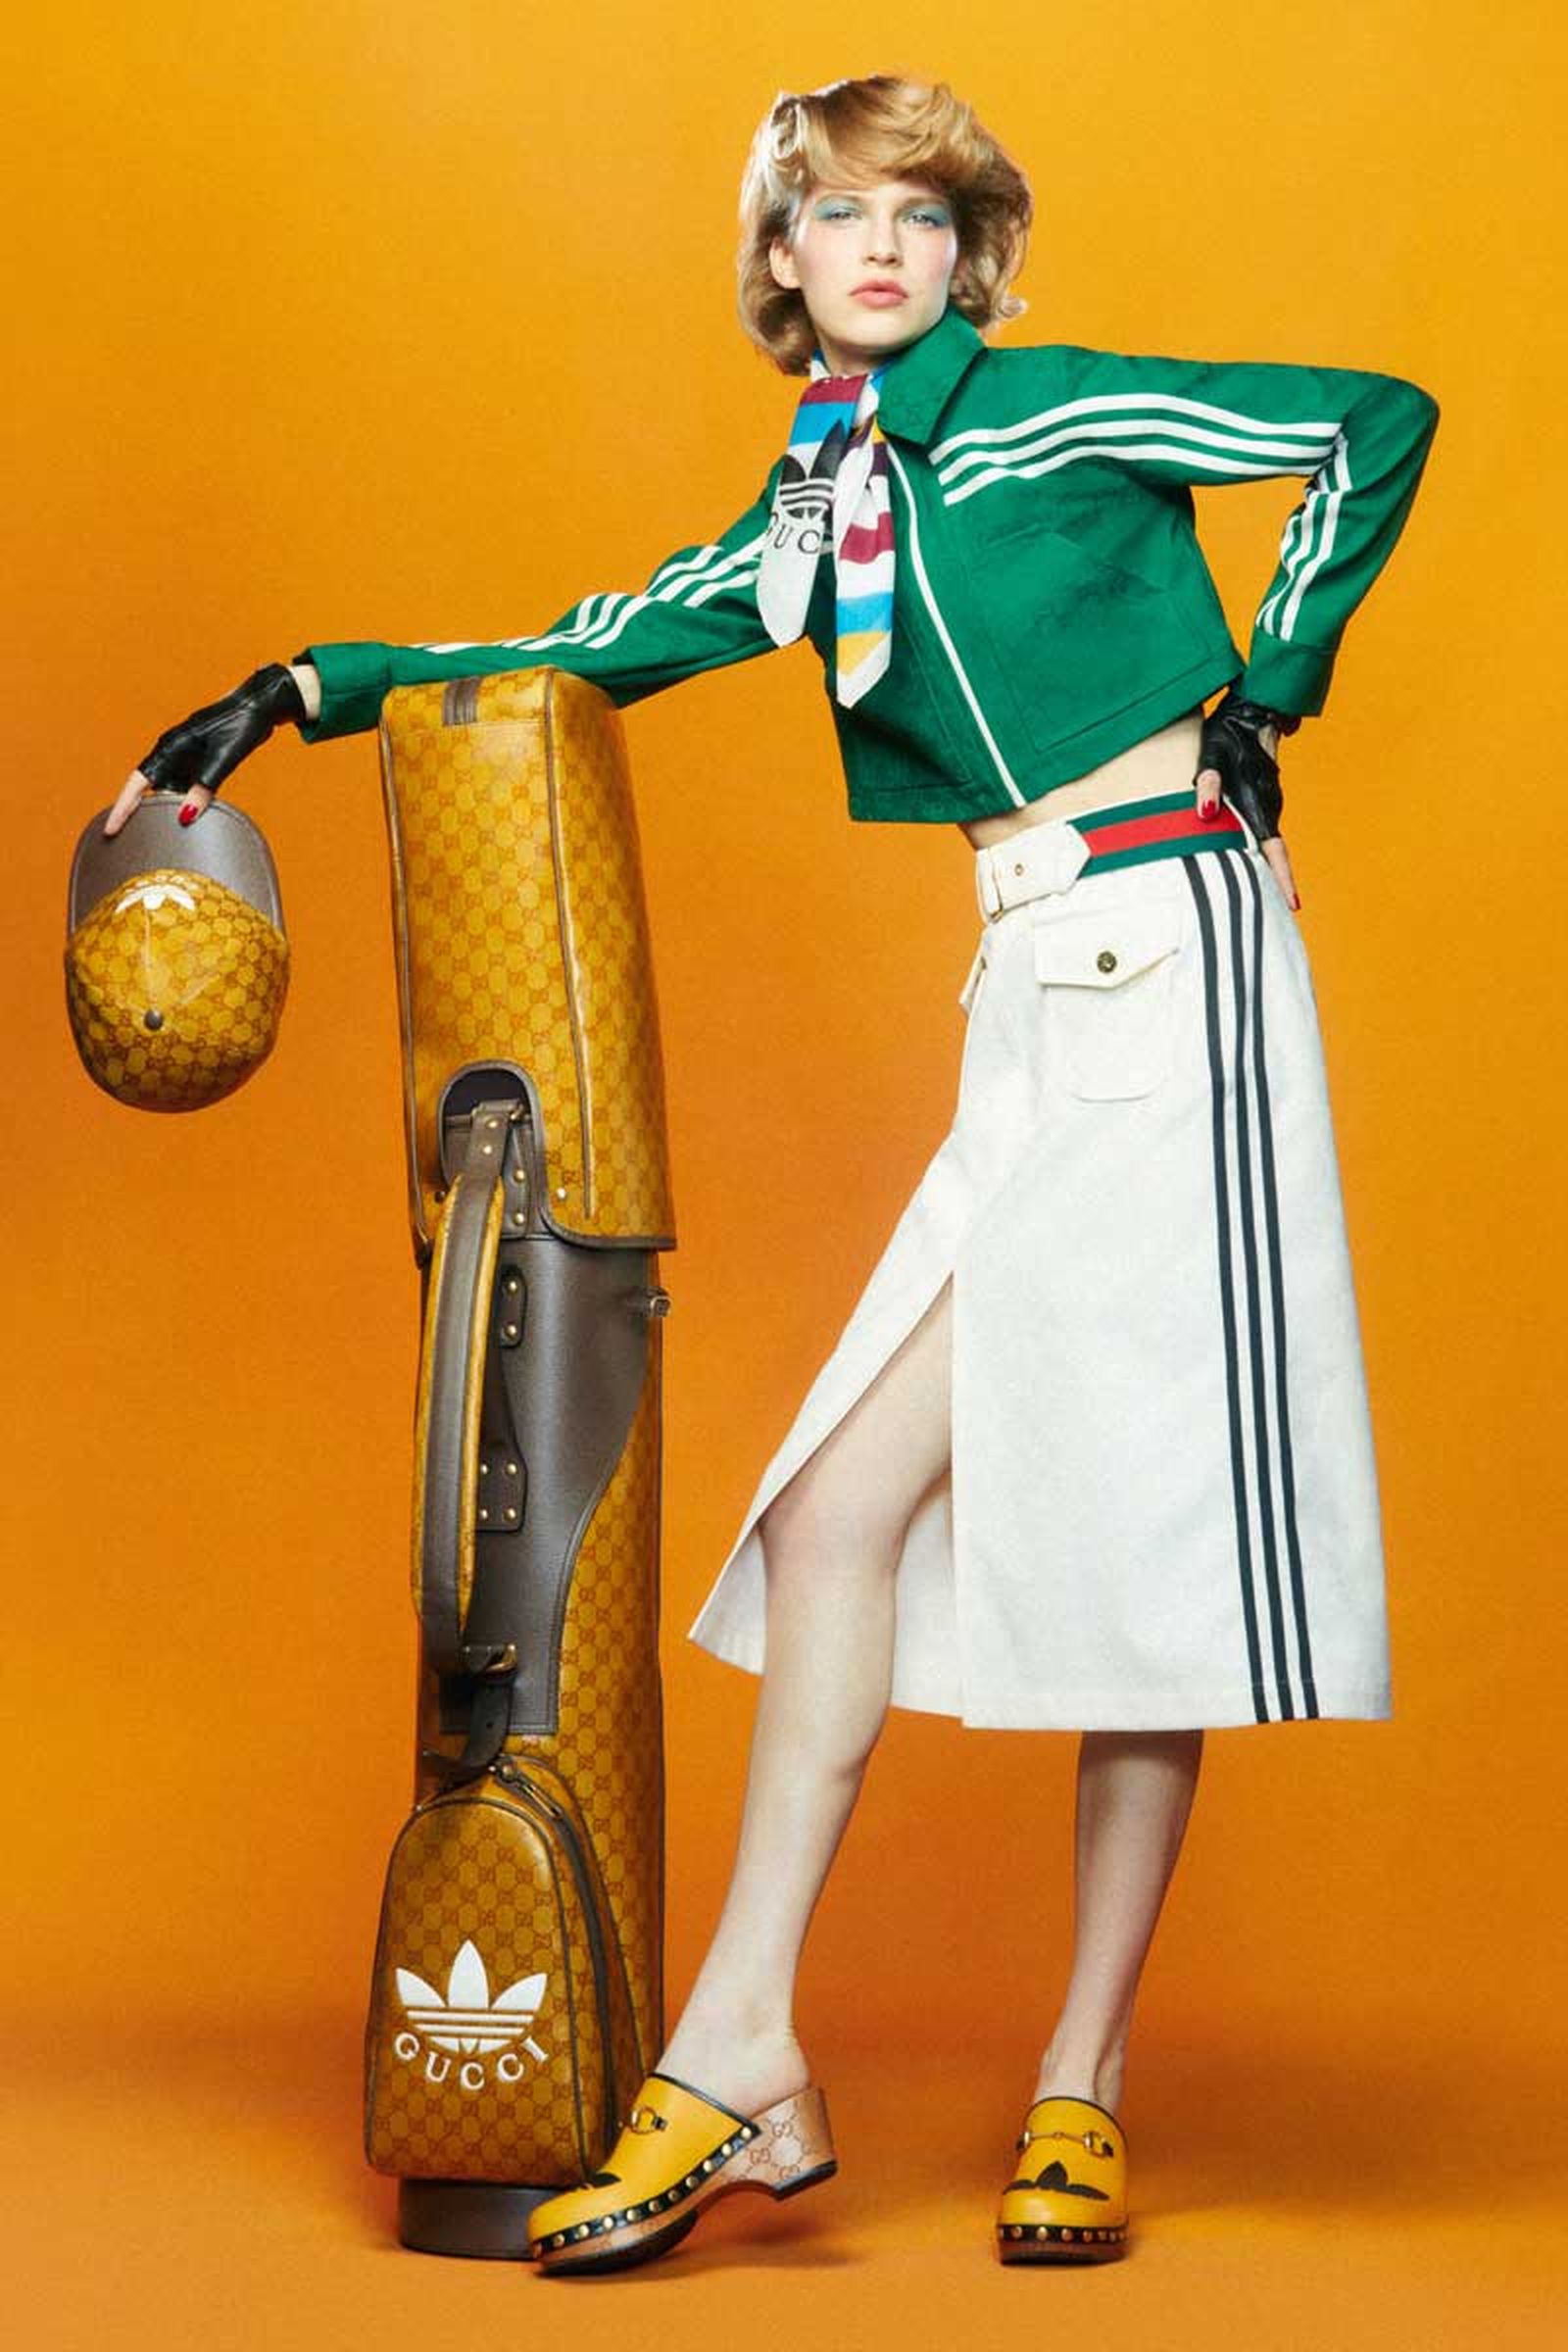 Adidas x Gucci: Khi sự cuồng nhiệt của thể thao giao thoa với những món đồ xa xỉ - Ảnh 2